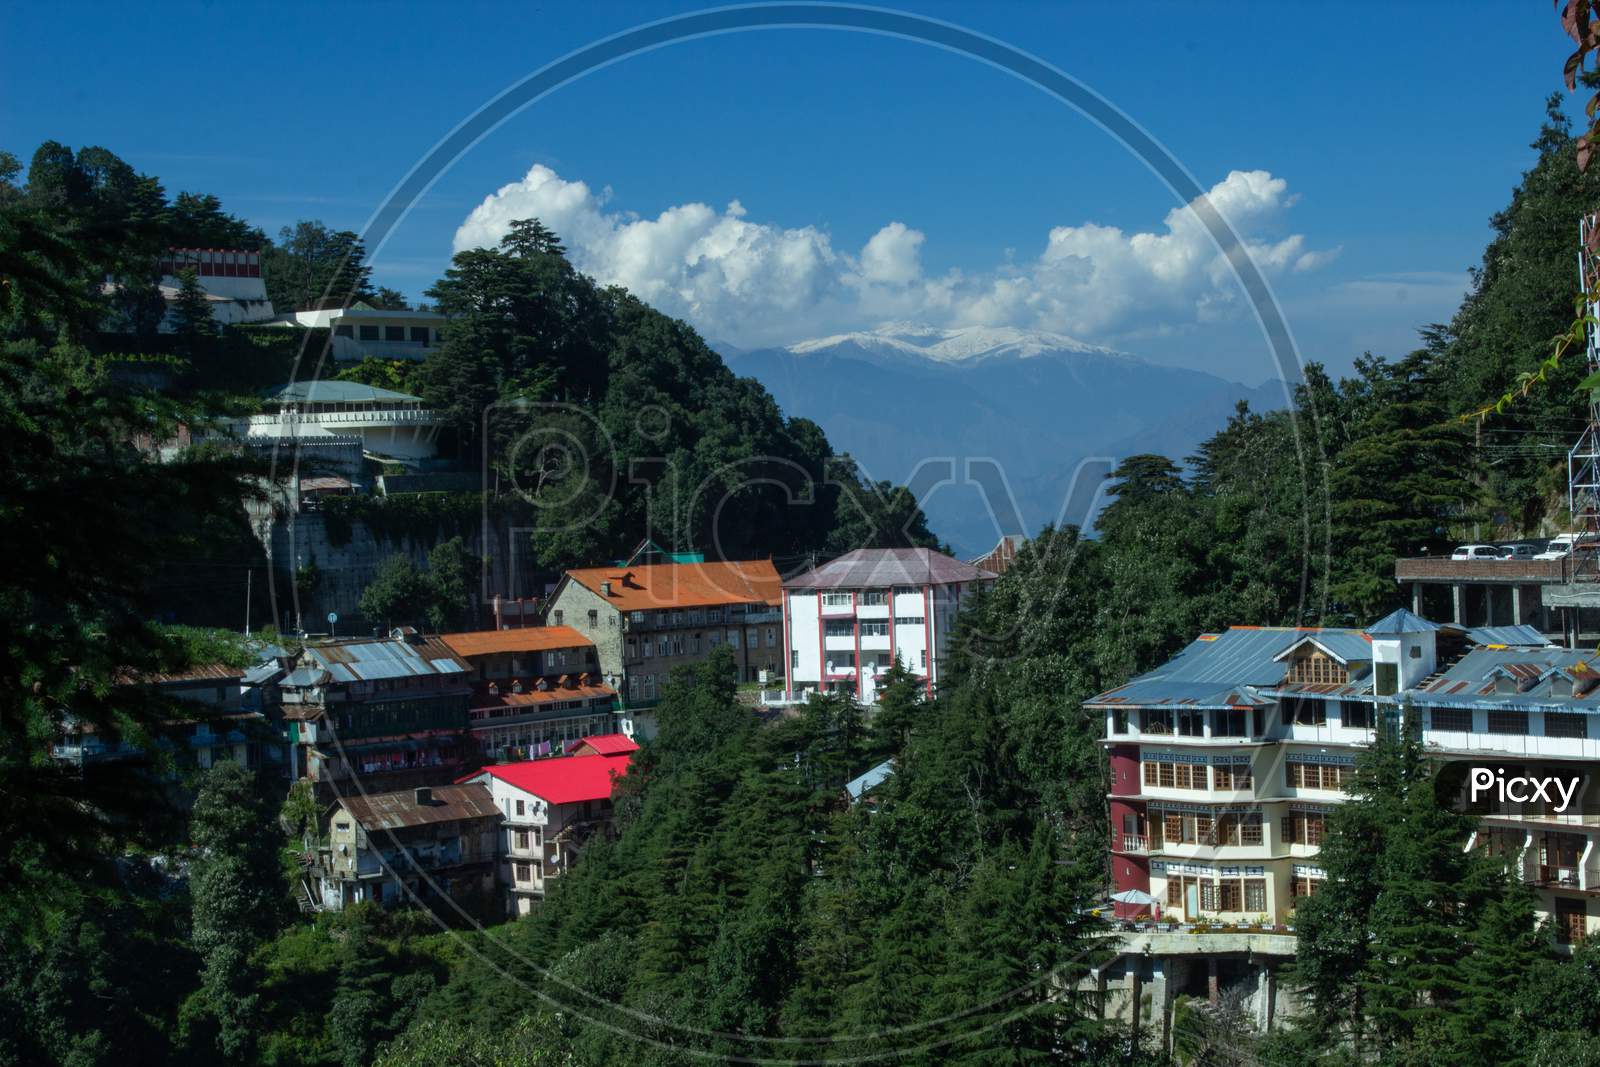 Dalhousie, Himachal Pradesh